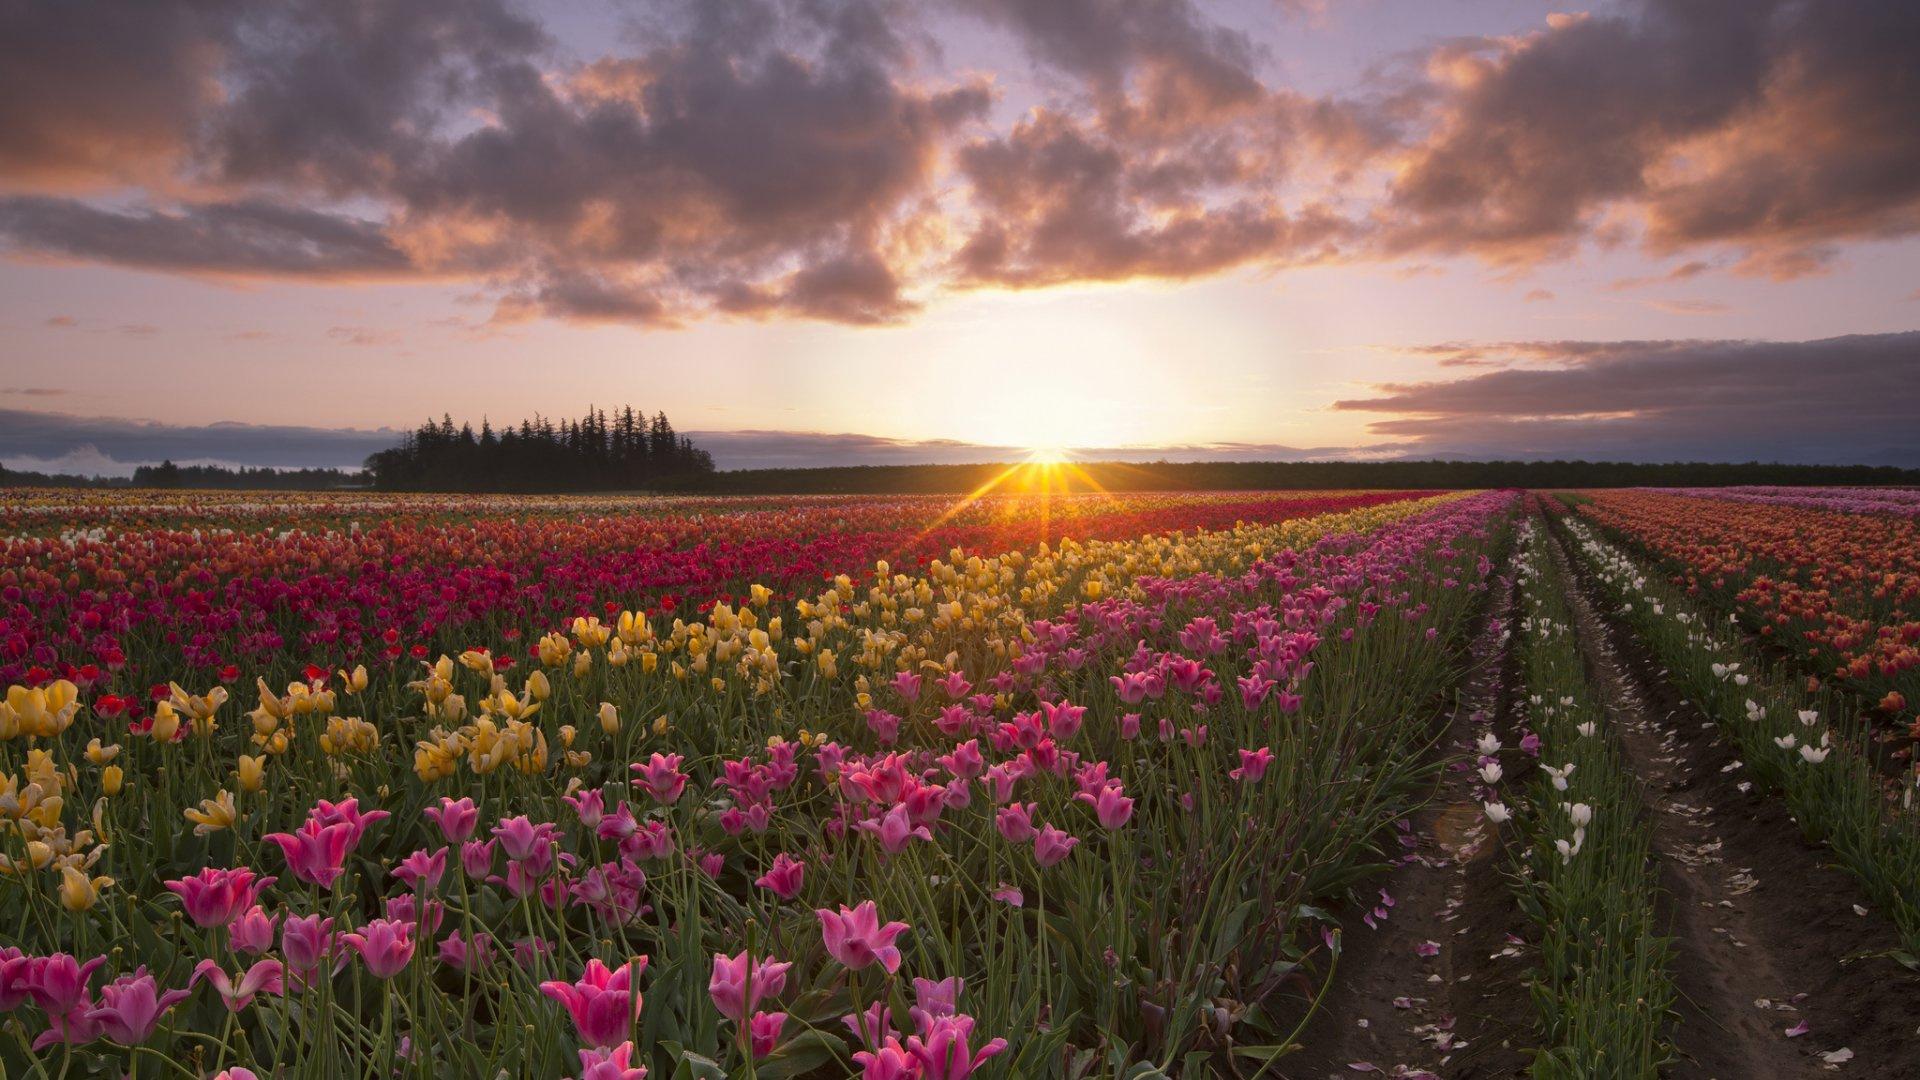 Spring, Wildflower, Flower, Tulips, Sunset Full HD, HDTV, 1080p 16:9